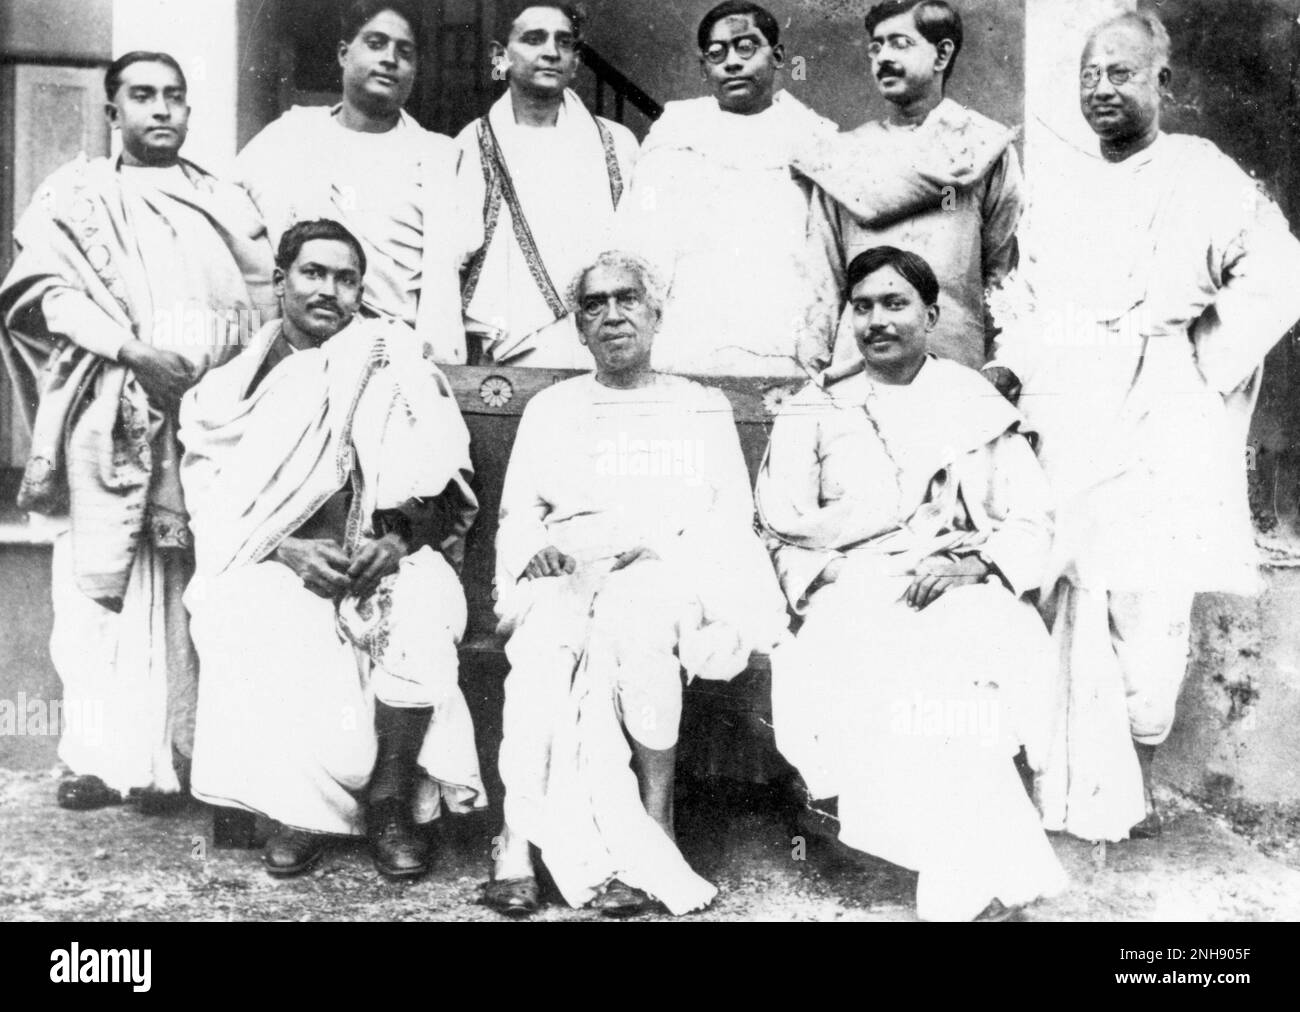 Satyendra Nath Bose, indische Mathematikerin und Physikerin, zusammen mit anderen Wissenschaftlern an der Universität Kalkutta, vor 1937. Sitzplätze (von links) Meghnad Saha, Acharya Jagadish Chandra Bose, Jnan Chandra Ghosh; Stand (von links) Snehamay Dutta, Satyendra Nath Bose, Debendra Mohan Bose, Nikhil Ranjan Sen, Jnanendra Nath Mukherjee, Nagendra Chandra Nag. Stockfoto